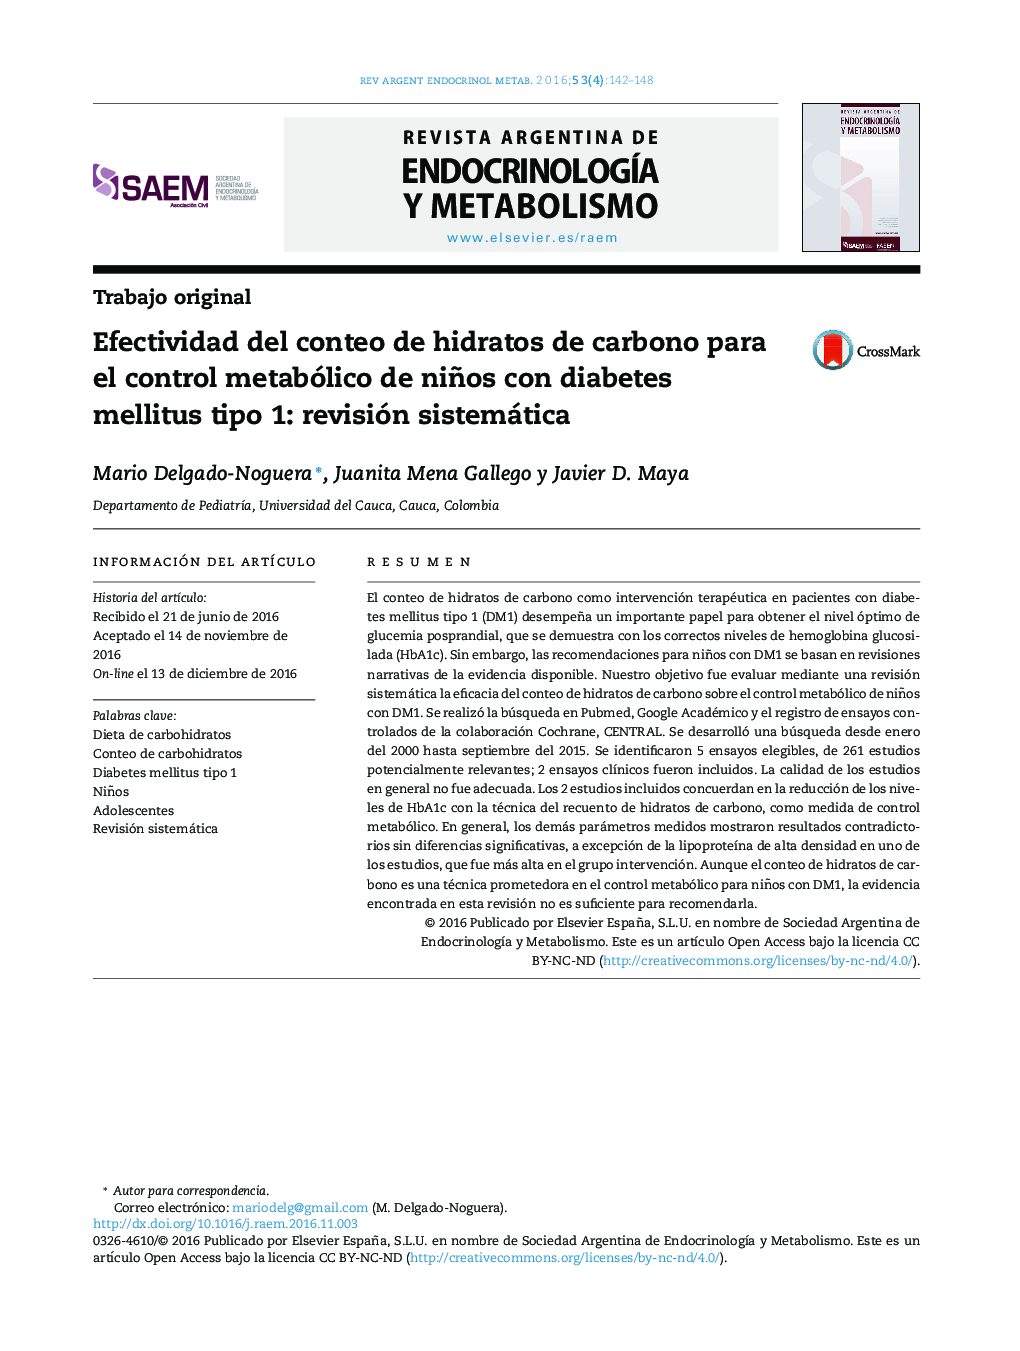 Efectividad del conteo de hidratos de carbono para el control metabólico de niños con diabetes mellitus tipo 1: revisión sistemática